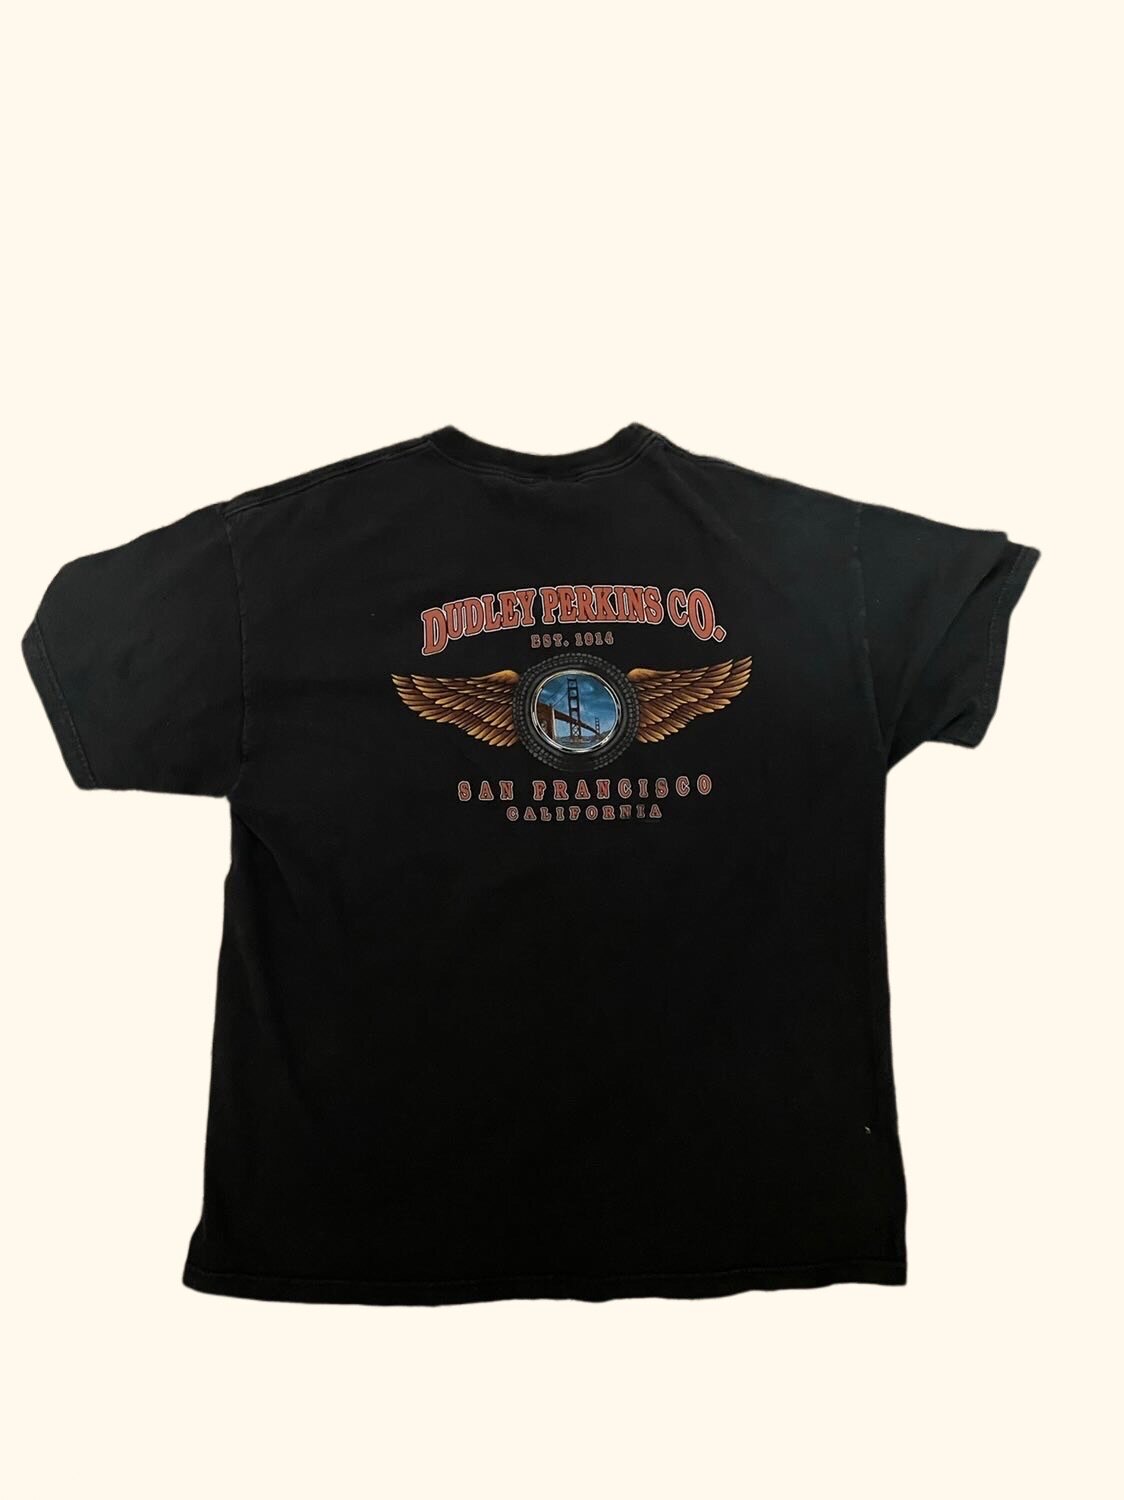 1999 Frisco Harley Davidson Shirt Size XL